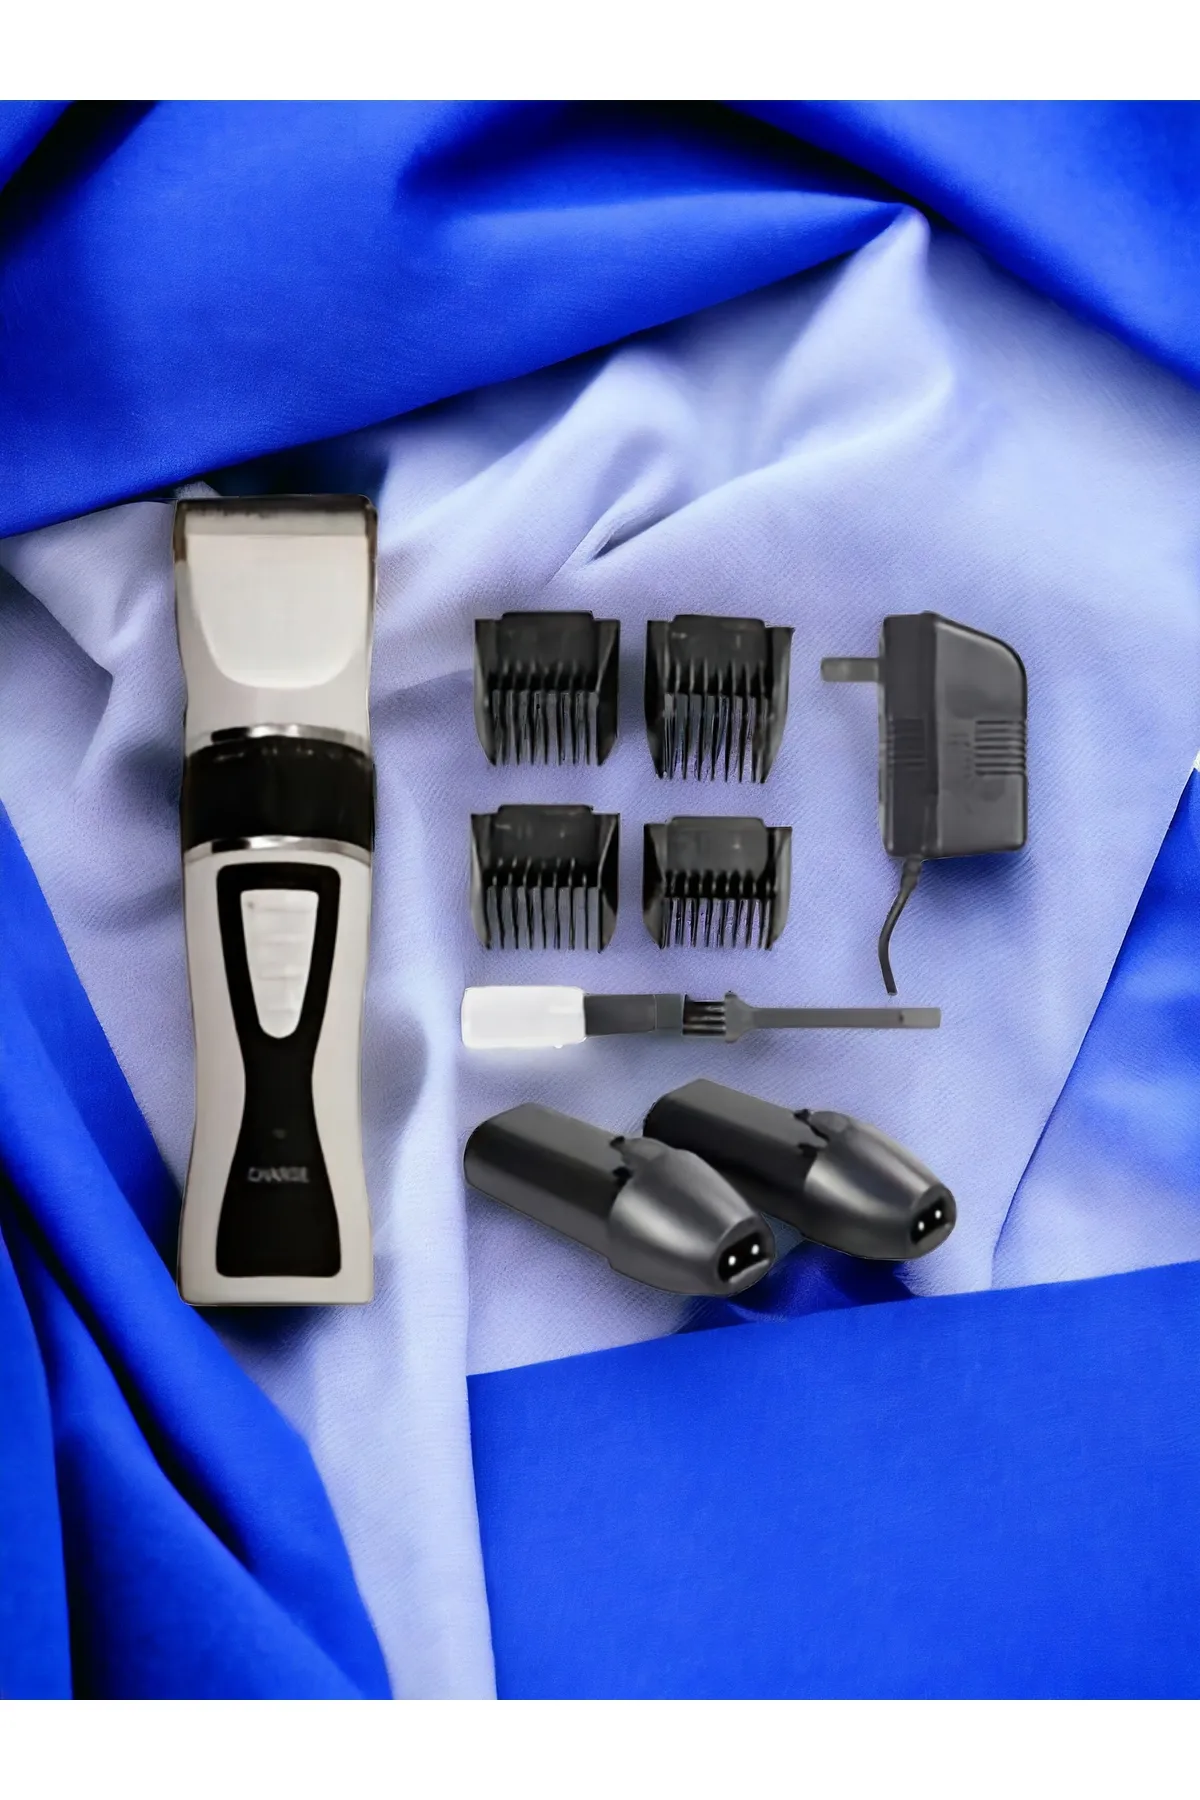 Girist Yedek Bataryalı Profesyonel Kablosuz Saç Sakal Tıraş Makinası